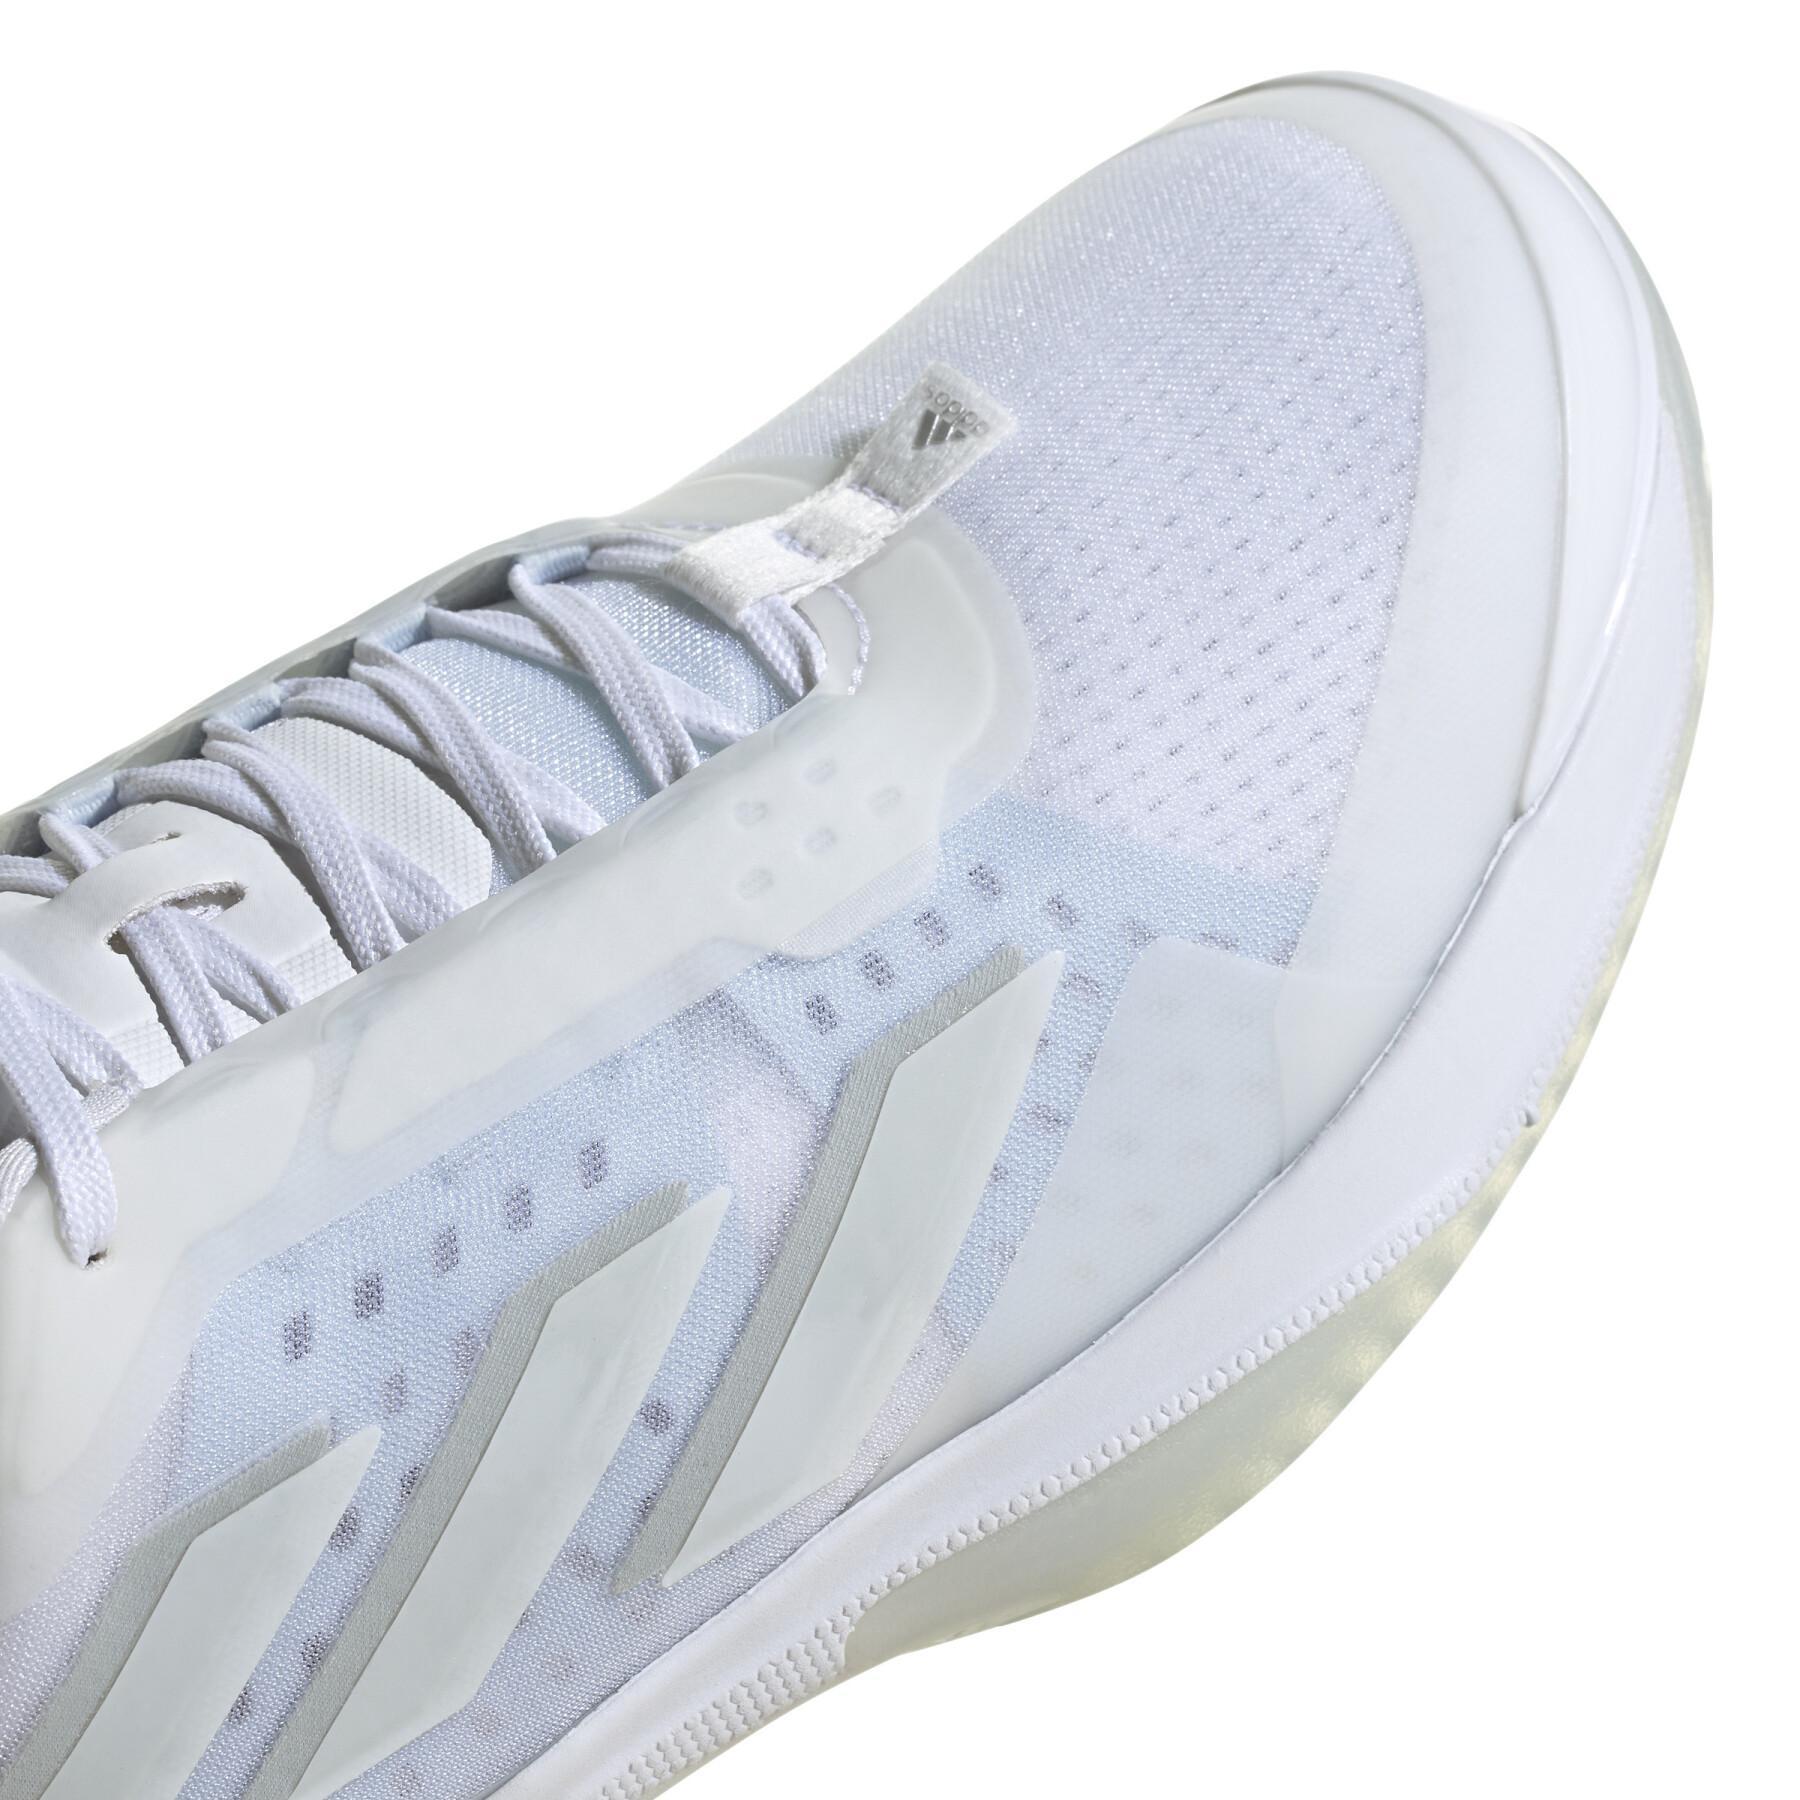 Chaussures de tennis fille adidas Avacourt